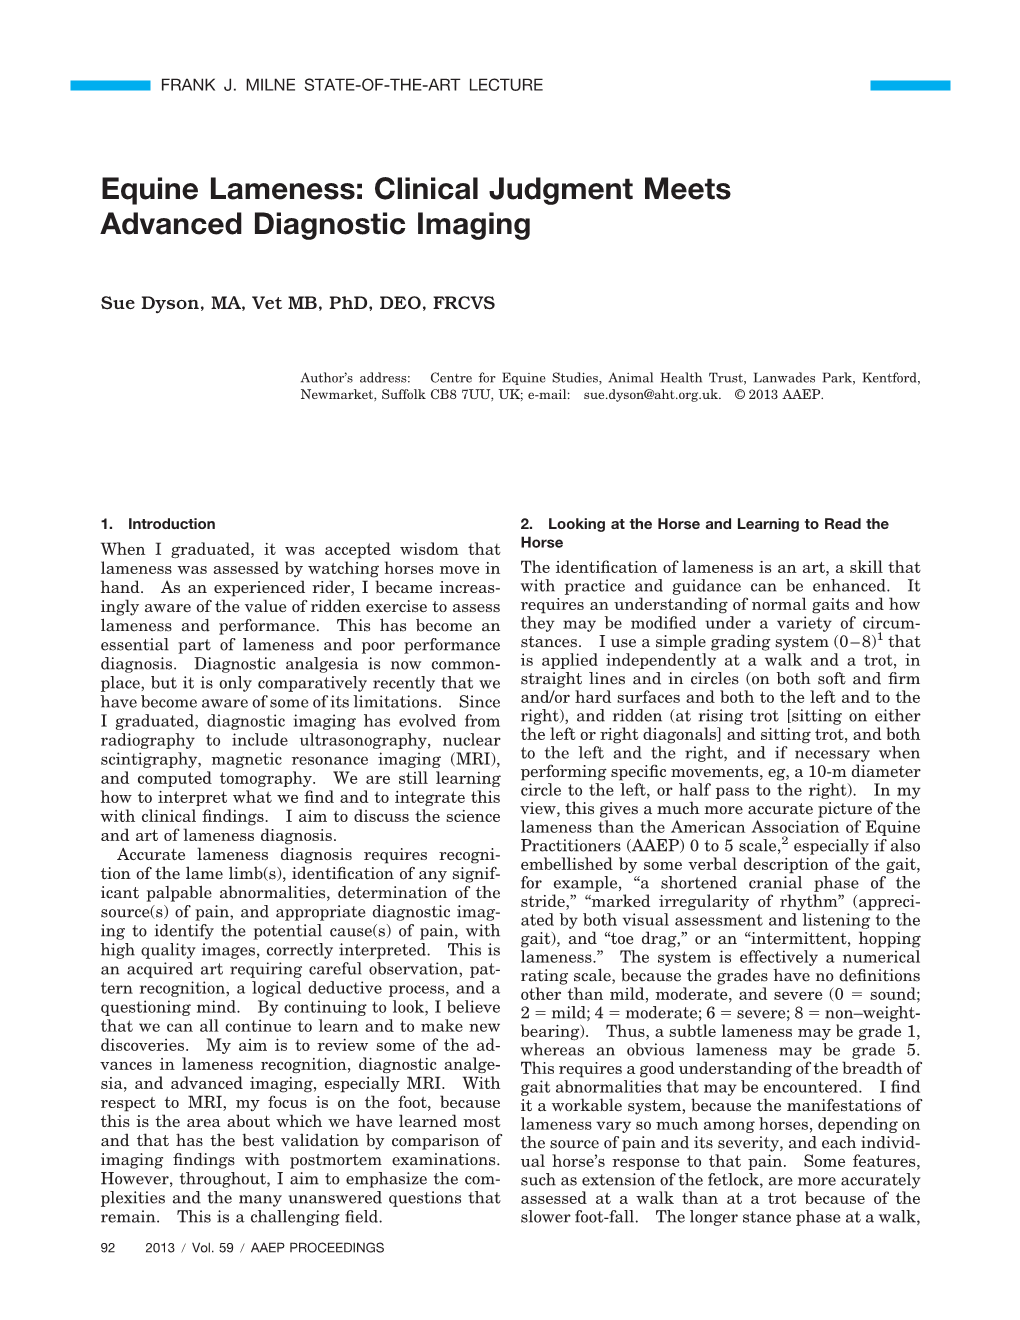 Equine Lameness: Clinical Judgment Meets Advanced Diagnostic Imaging